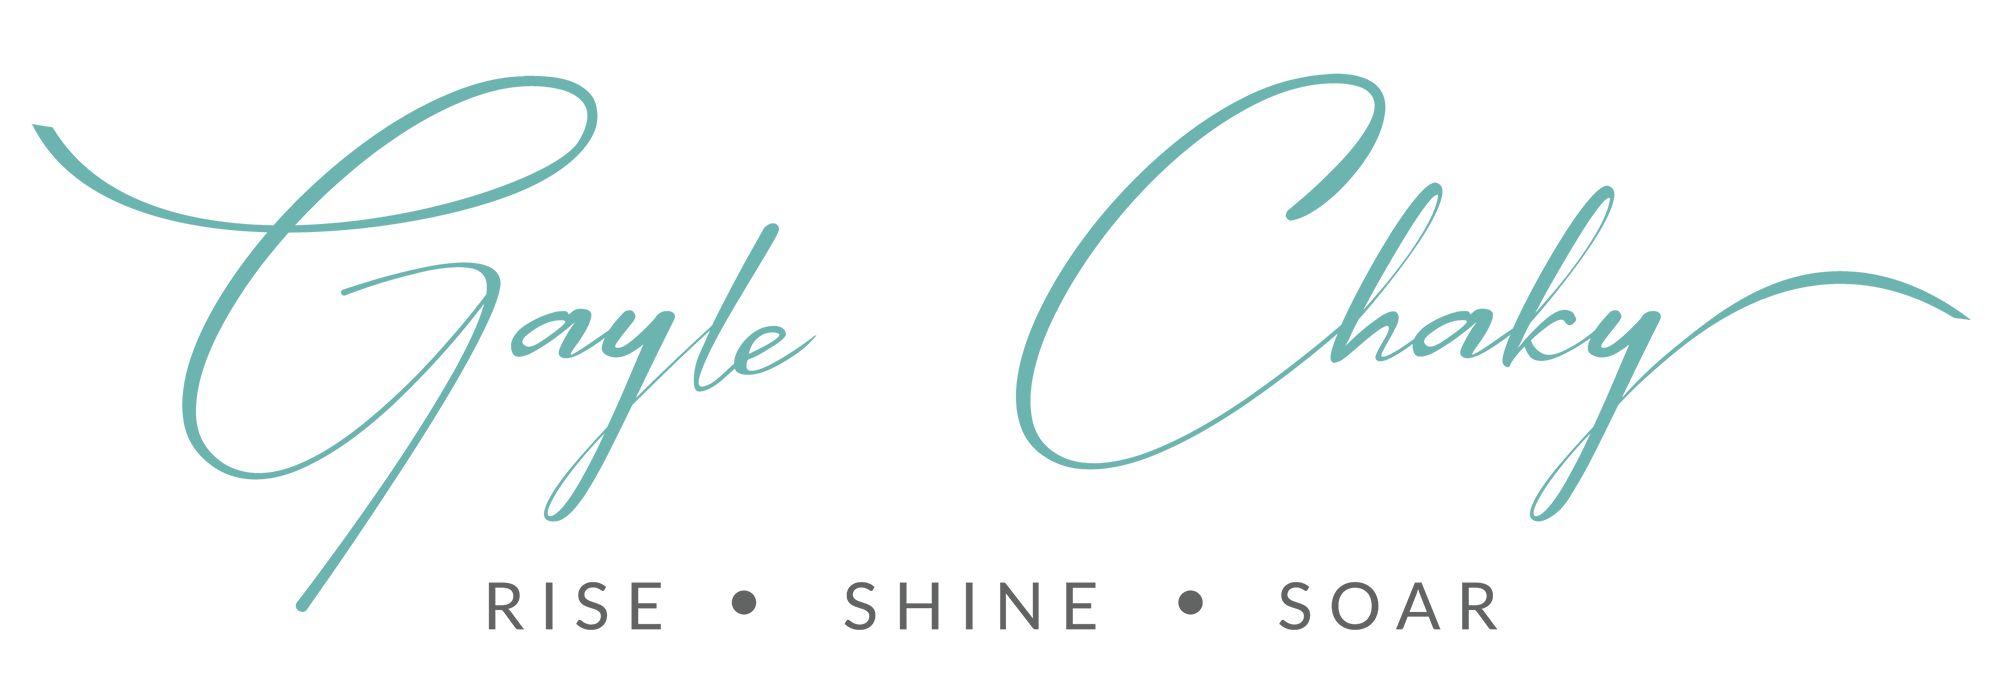 Gayle Chaky - Rise, Shine, Soar